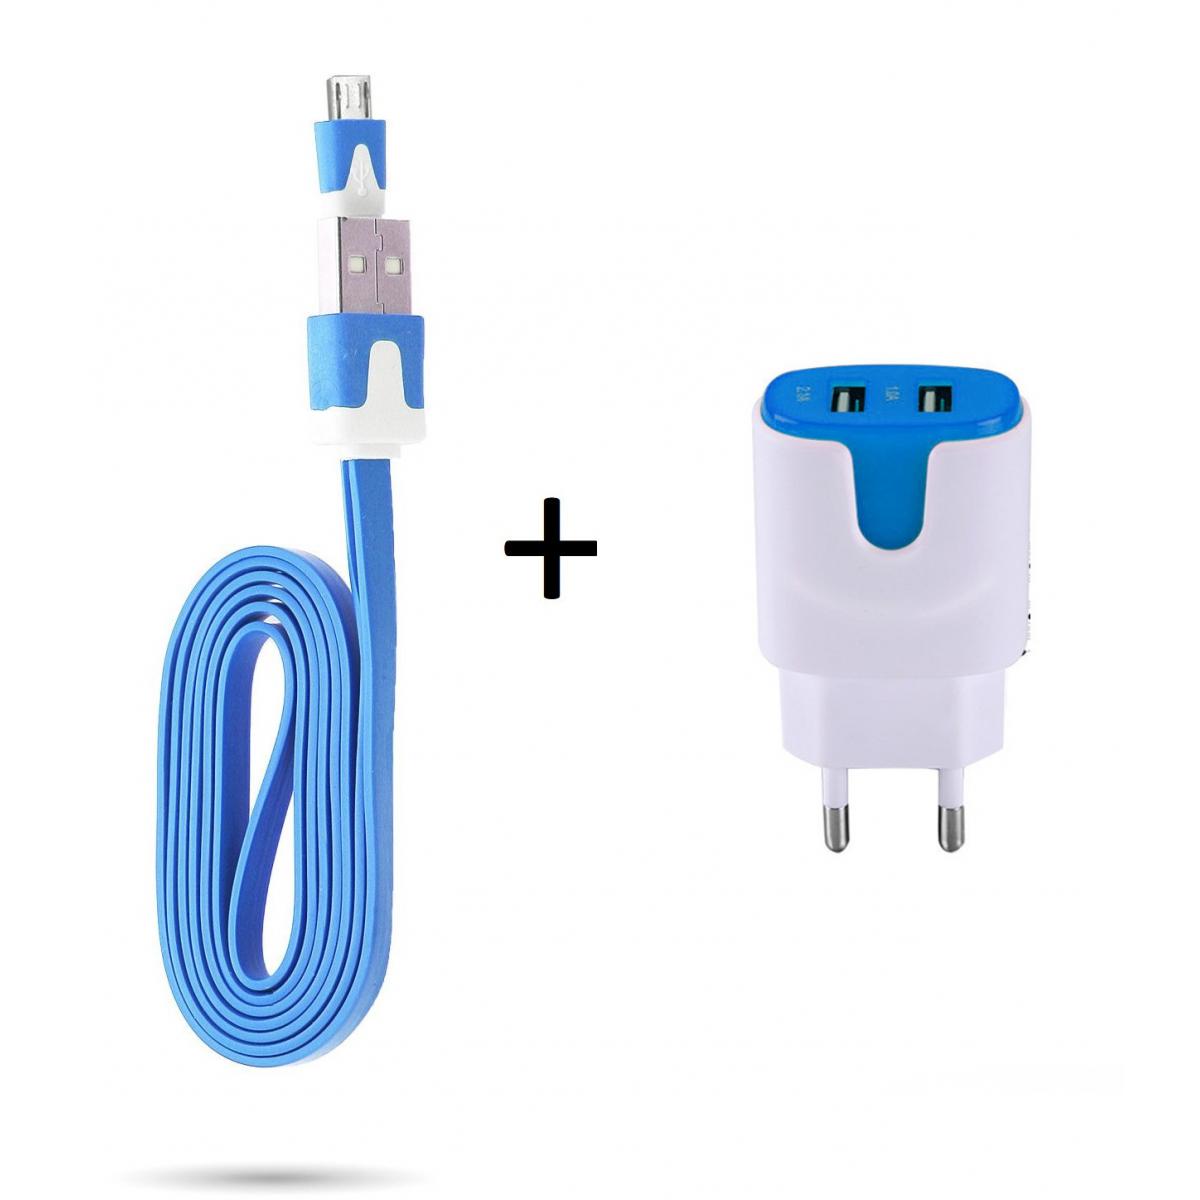 Shot - Pack Chargeur pour WIKO View 3 Lite Smartphone Micro USB (Cable Noodle 1m Chargeur + Double Prise Secteur Couleur USB) (BLEU) - Chargeur secteur téléphone